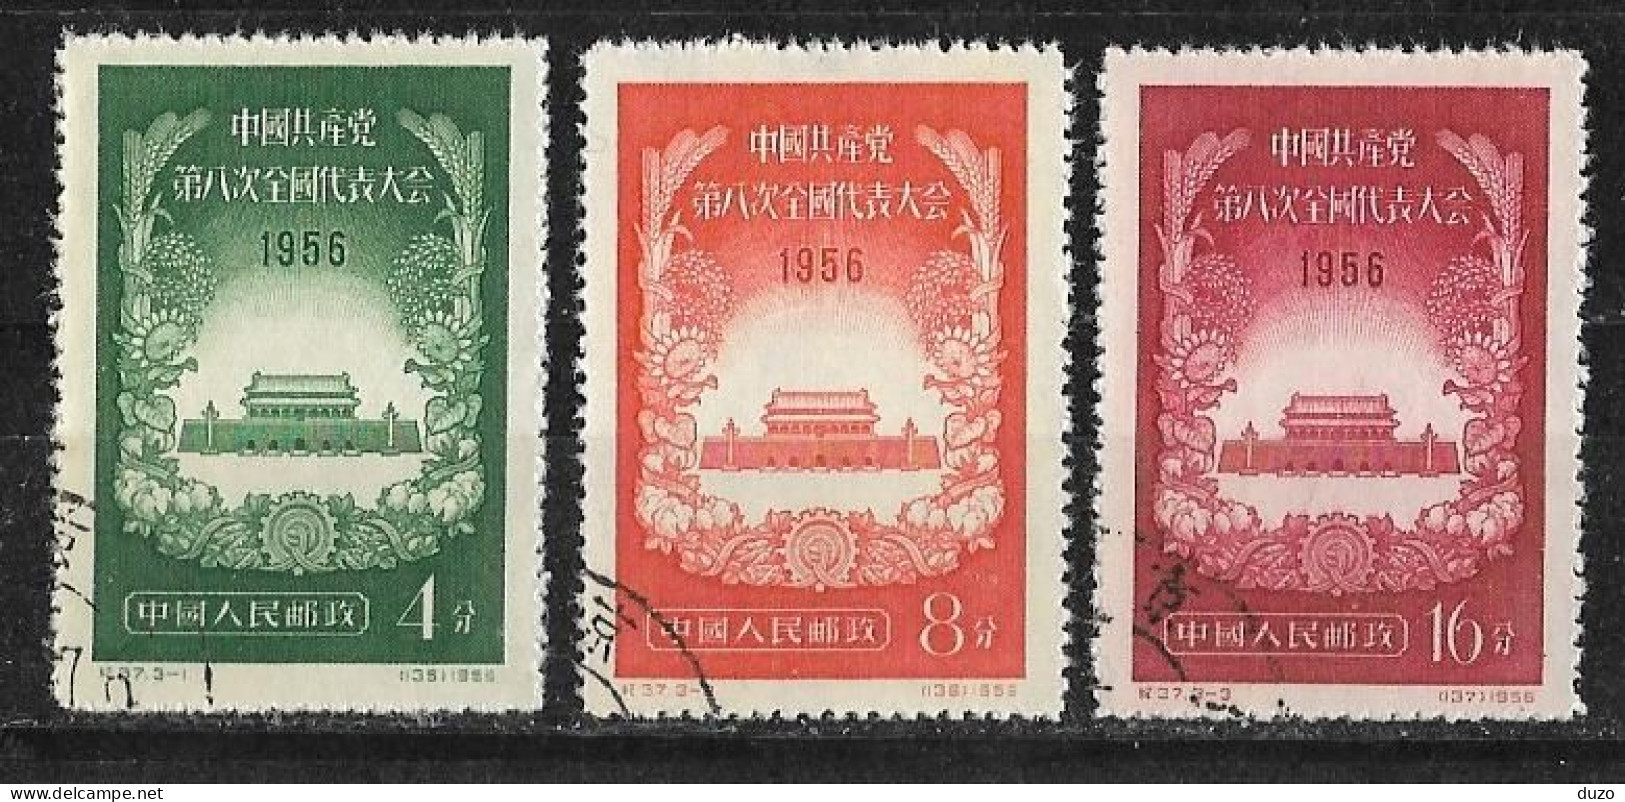 Chine China 1954 - Porte De La Paix Celeste - Michel 325/326/327  Y&T N° 1087/1088/1089  Oblitérés - Used Stamps